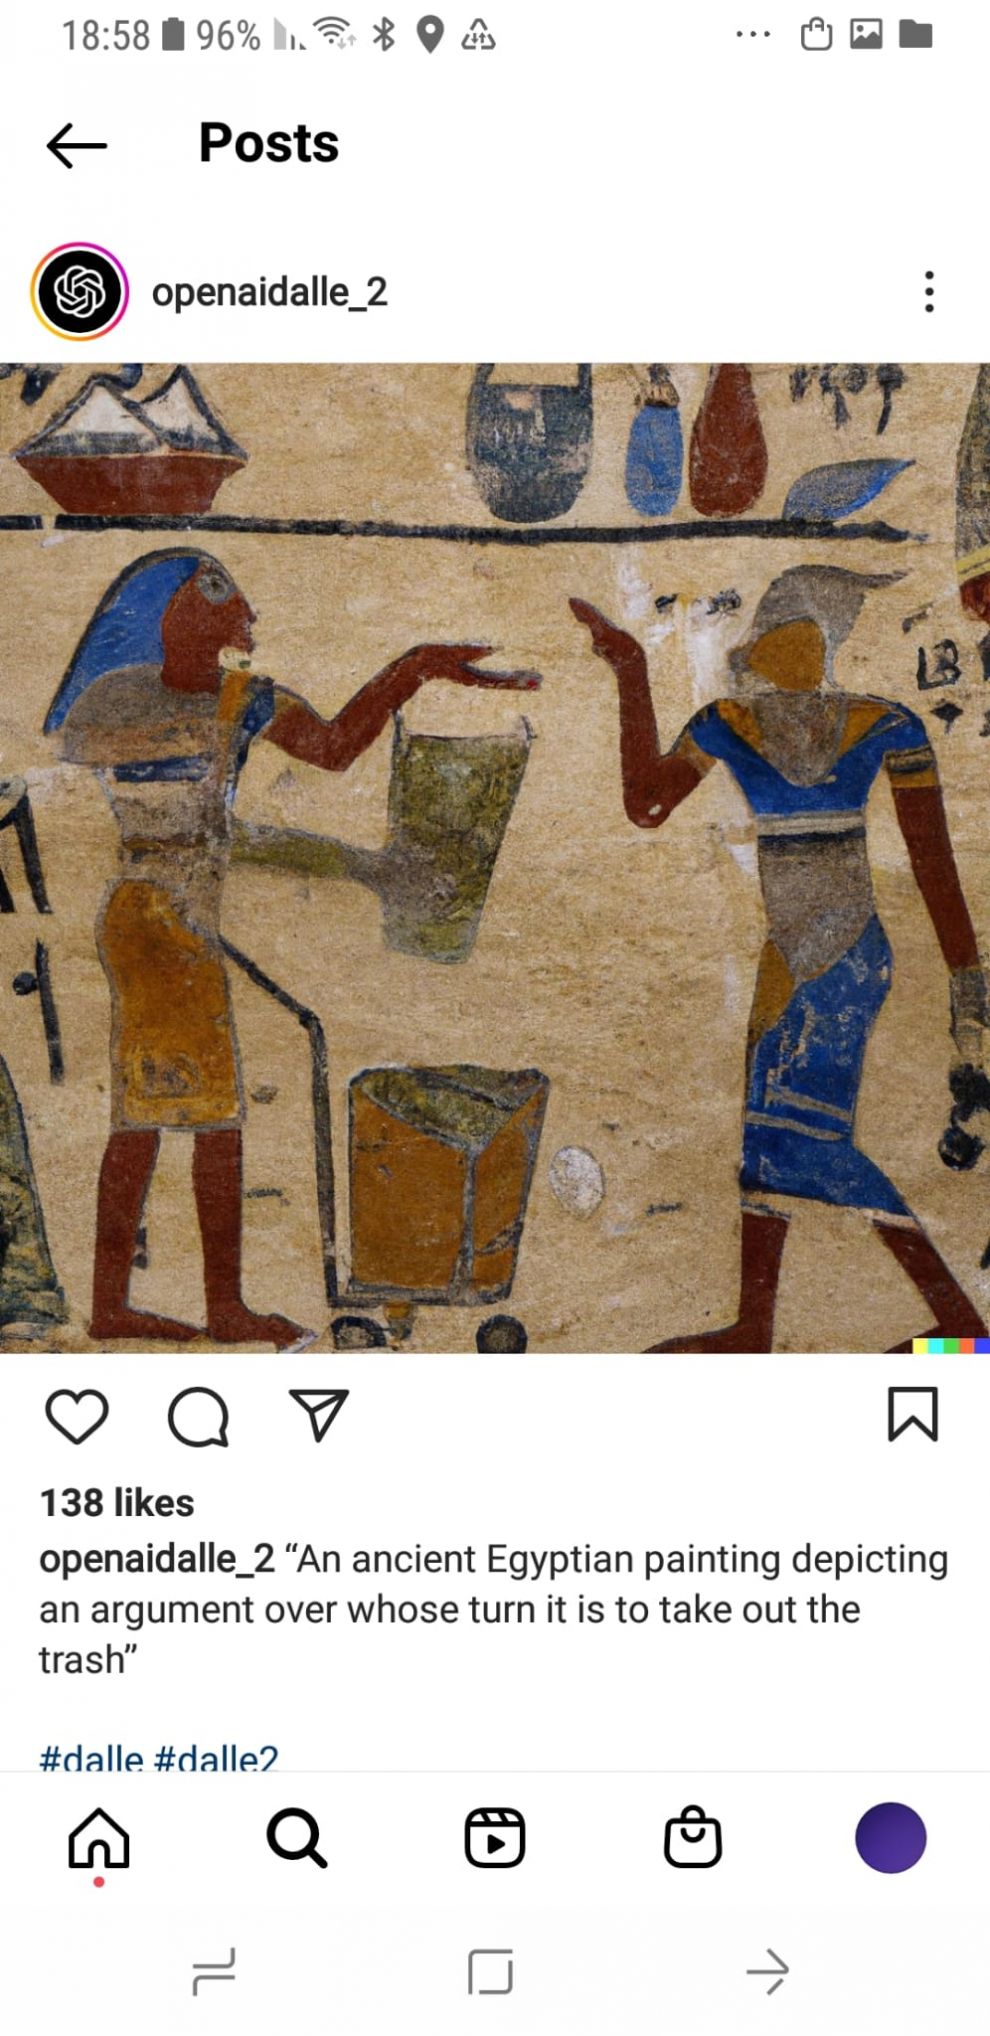 ציור מצרי עתיק המתאר ויכוח לגבי מיהו זה שתורו להוריד את הזבל